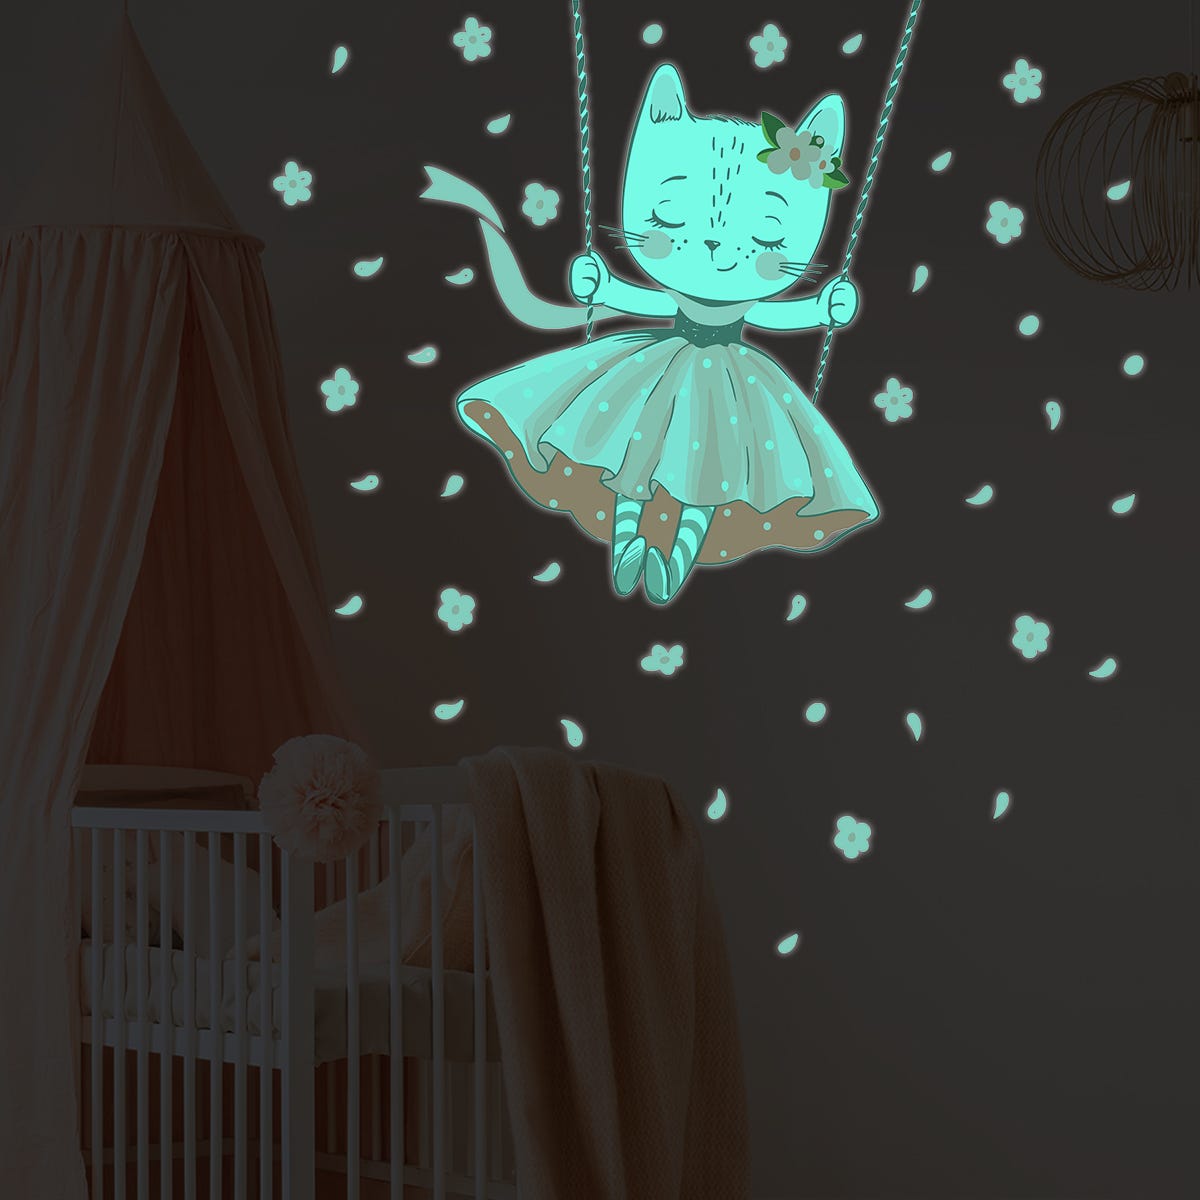 Sticker phosphorescent lumineux - CHAT DANSEUSE - Autocollant mural plafond  enfant fluorescent - 50x40cm